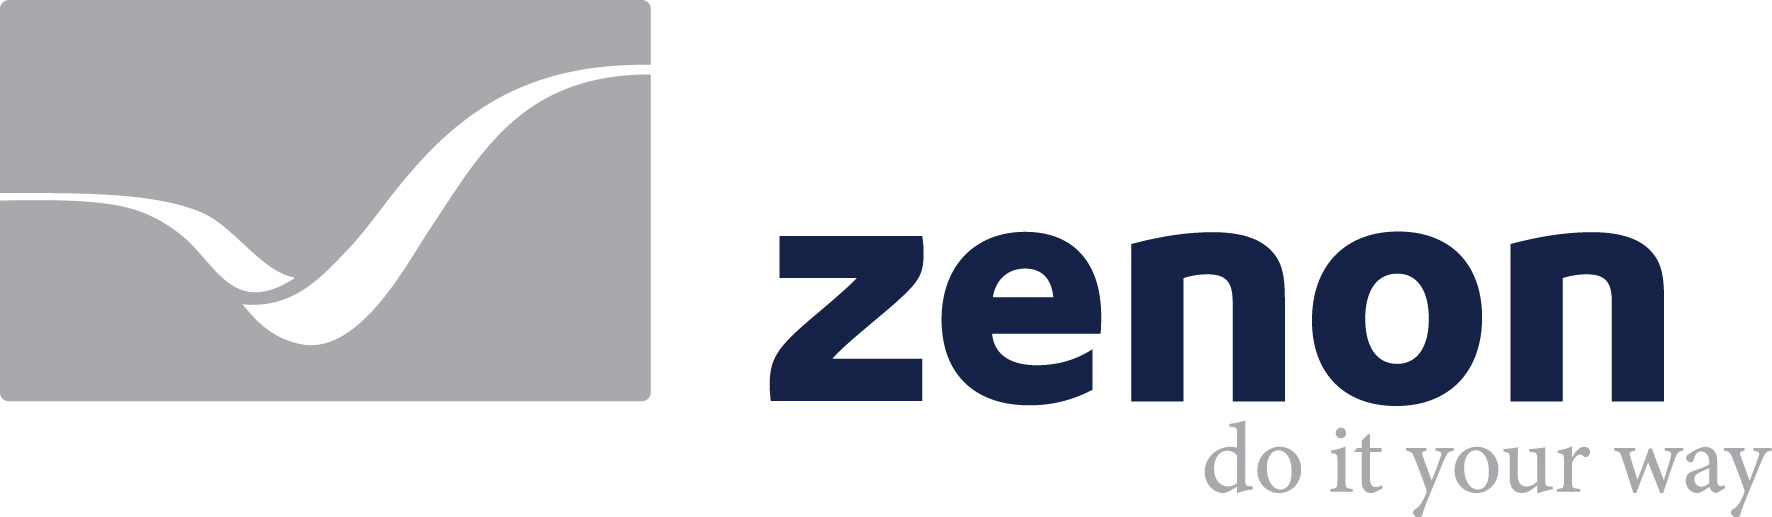 Zenon_logo_blue-48b928